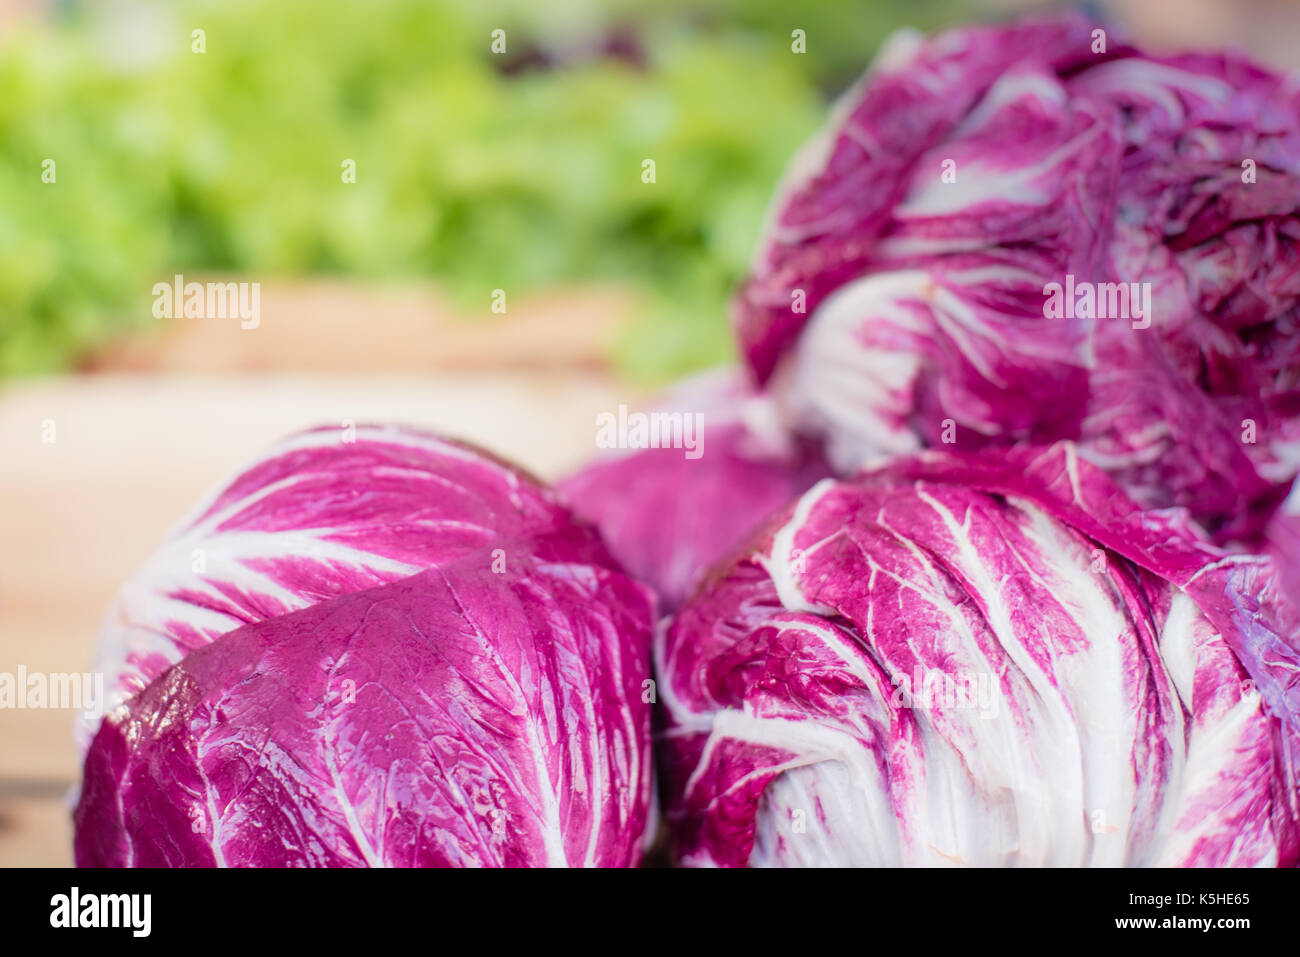 Dettaglio del radicchio rosso insalata di cicoria in stallo di mercato messa a fuoco selettiva con varie verdure colorate in background Foto Stock